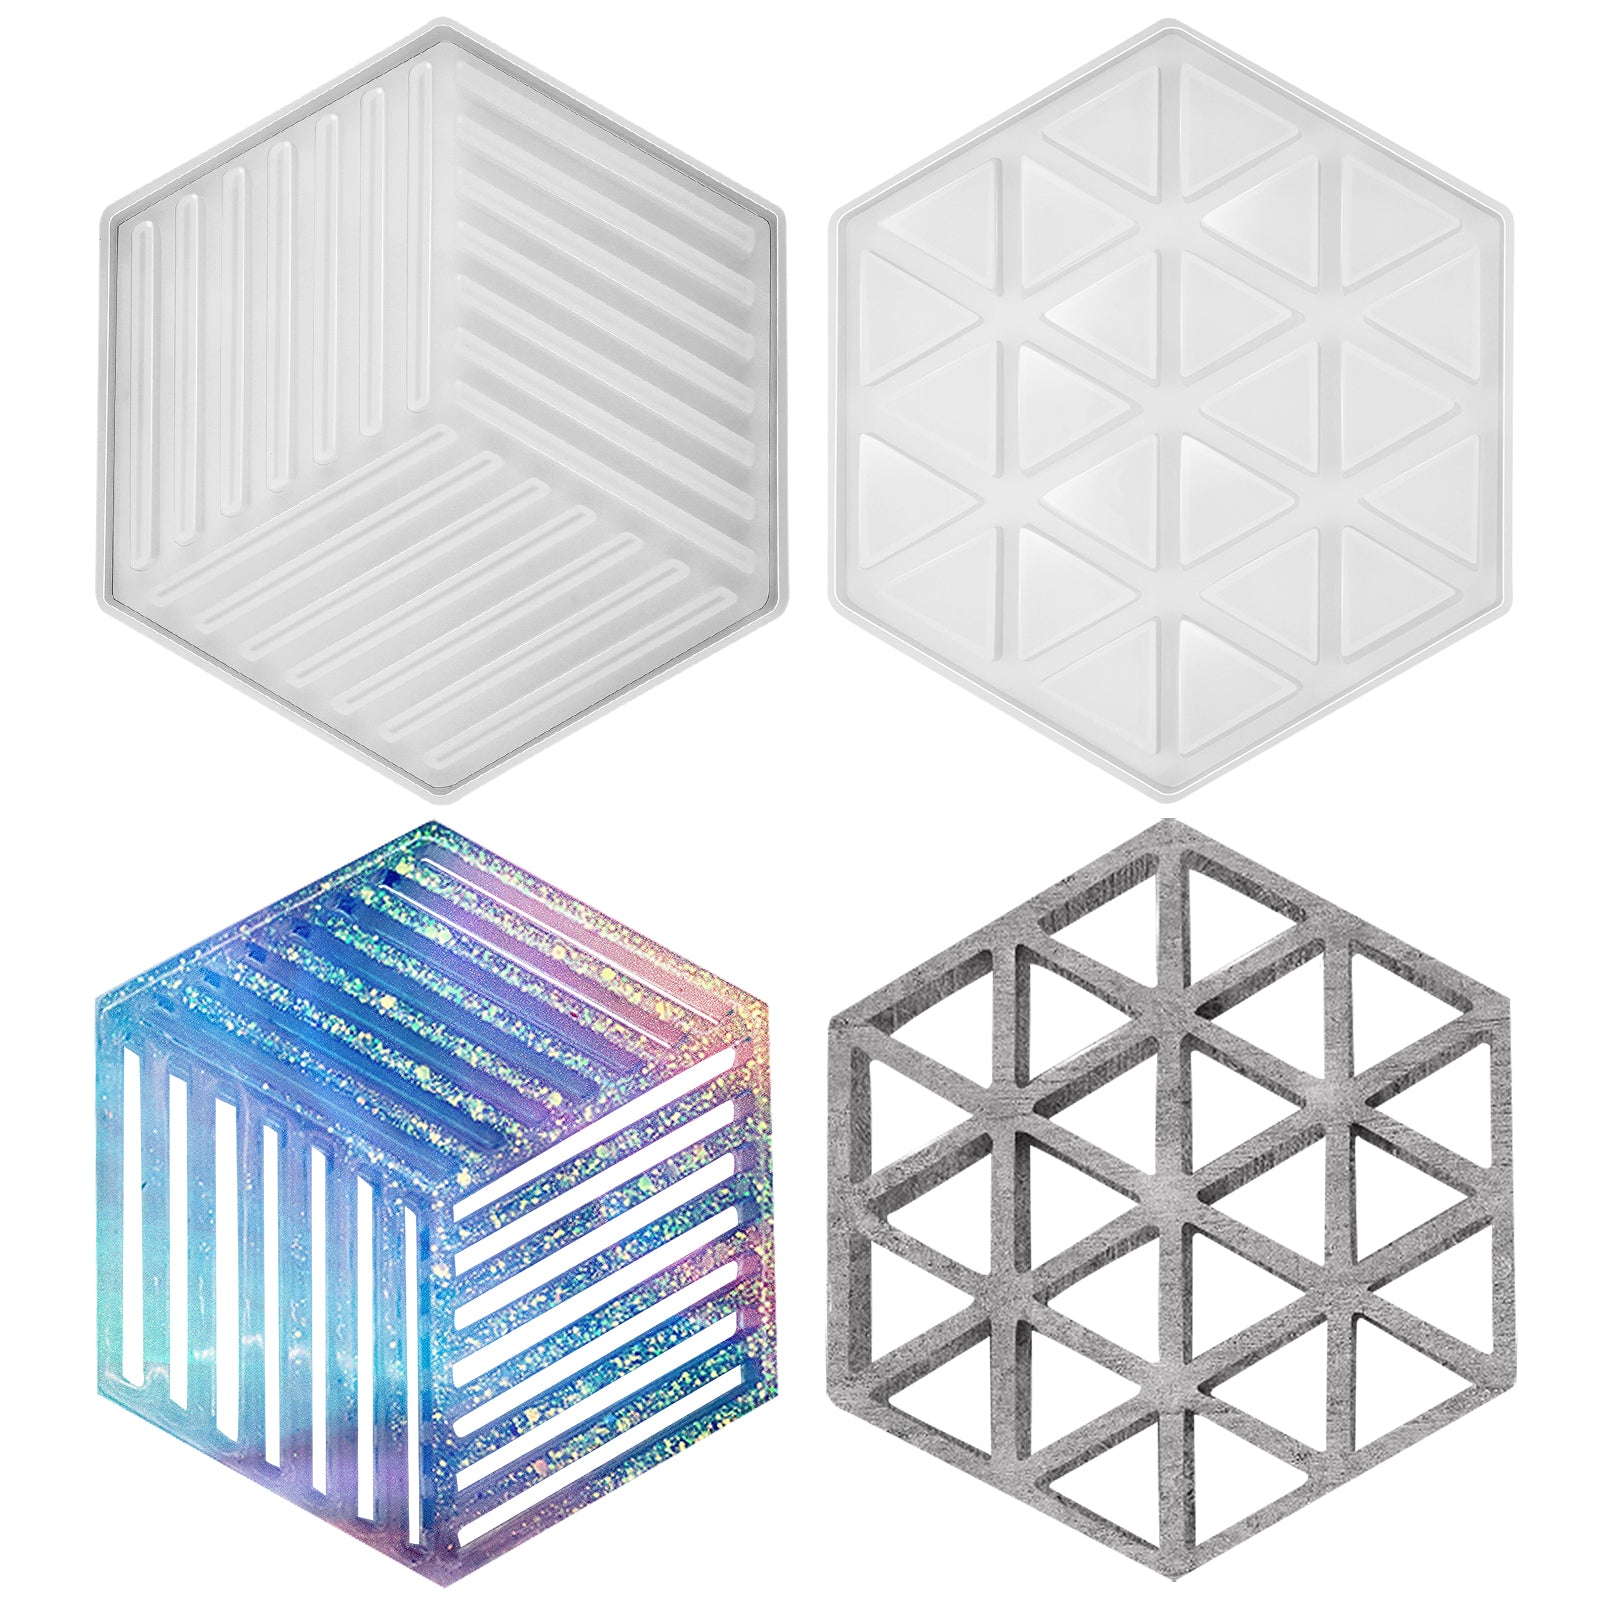 Funshowcase Hexagon Honeycomb Lace Border Silicone Mold